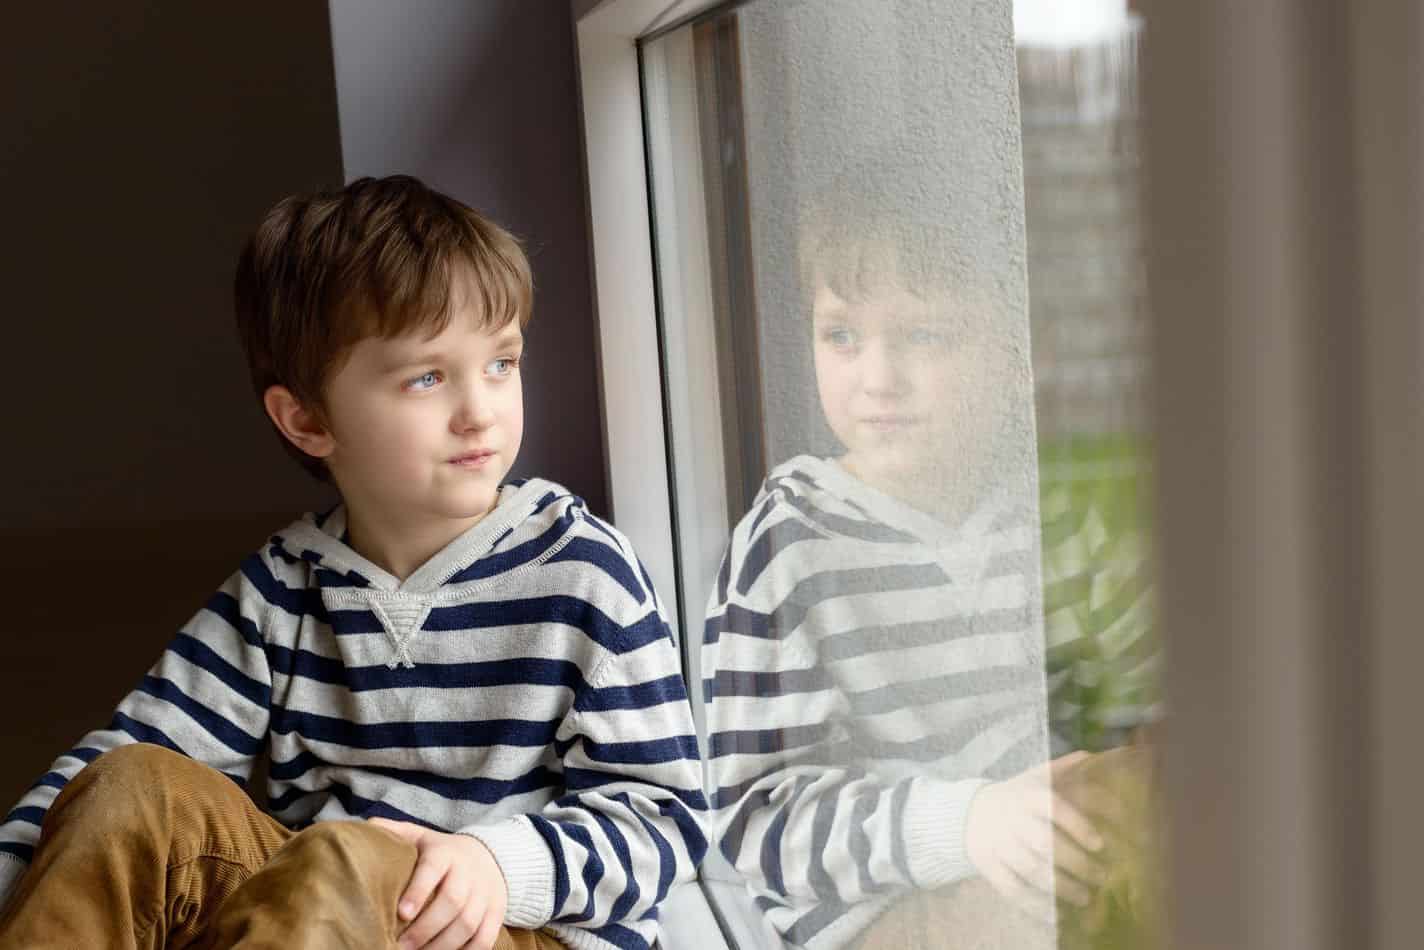 ¿Es seguro y legal para un niño de 7 años quedarse solo en casa?